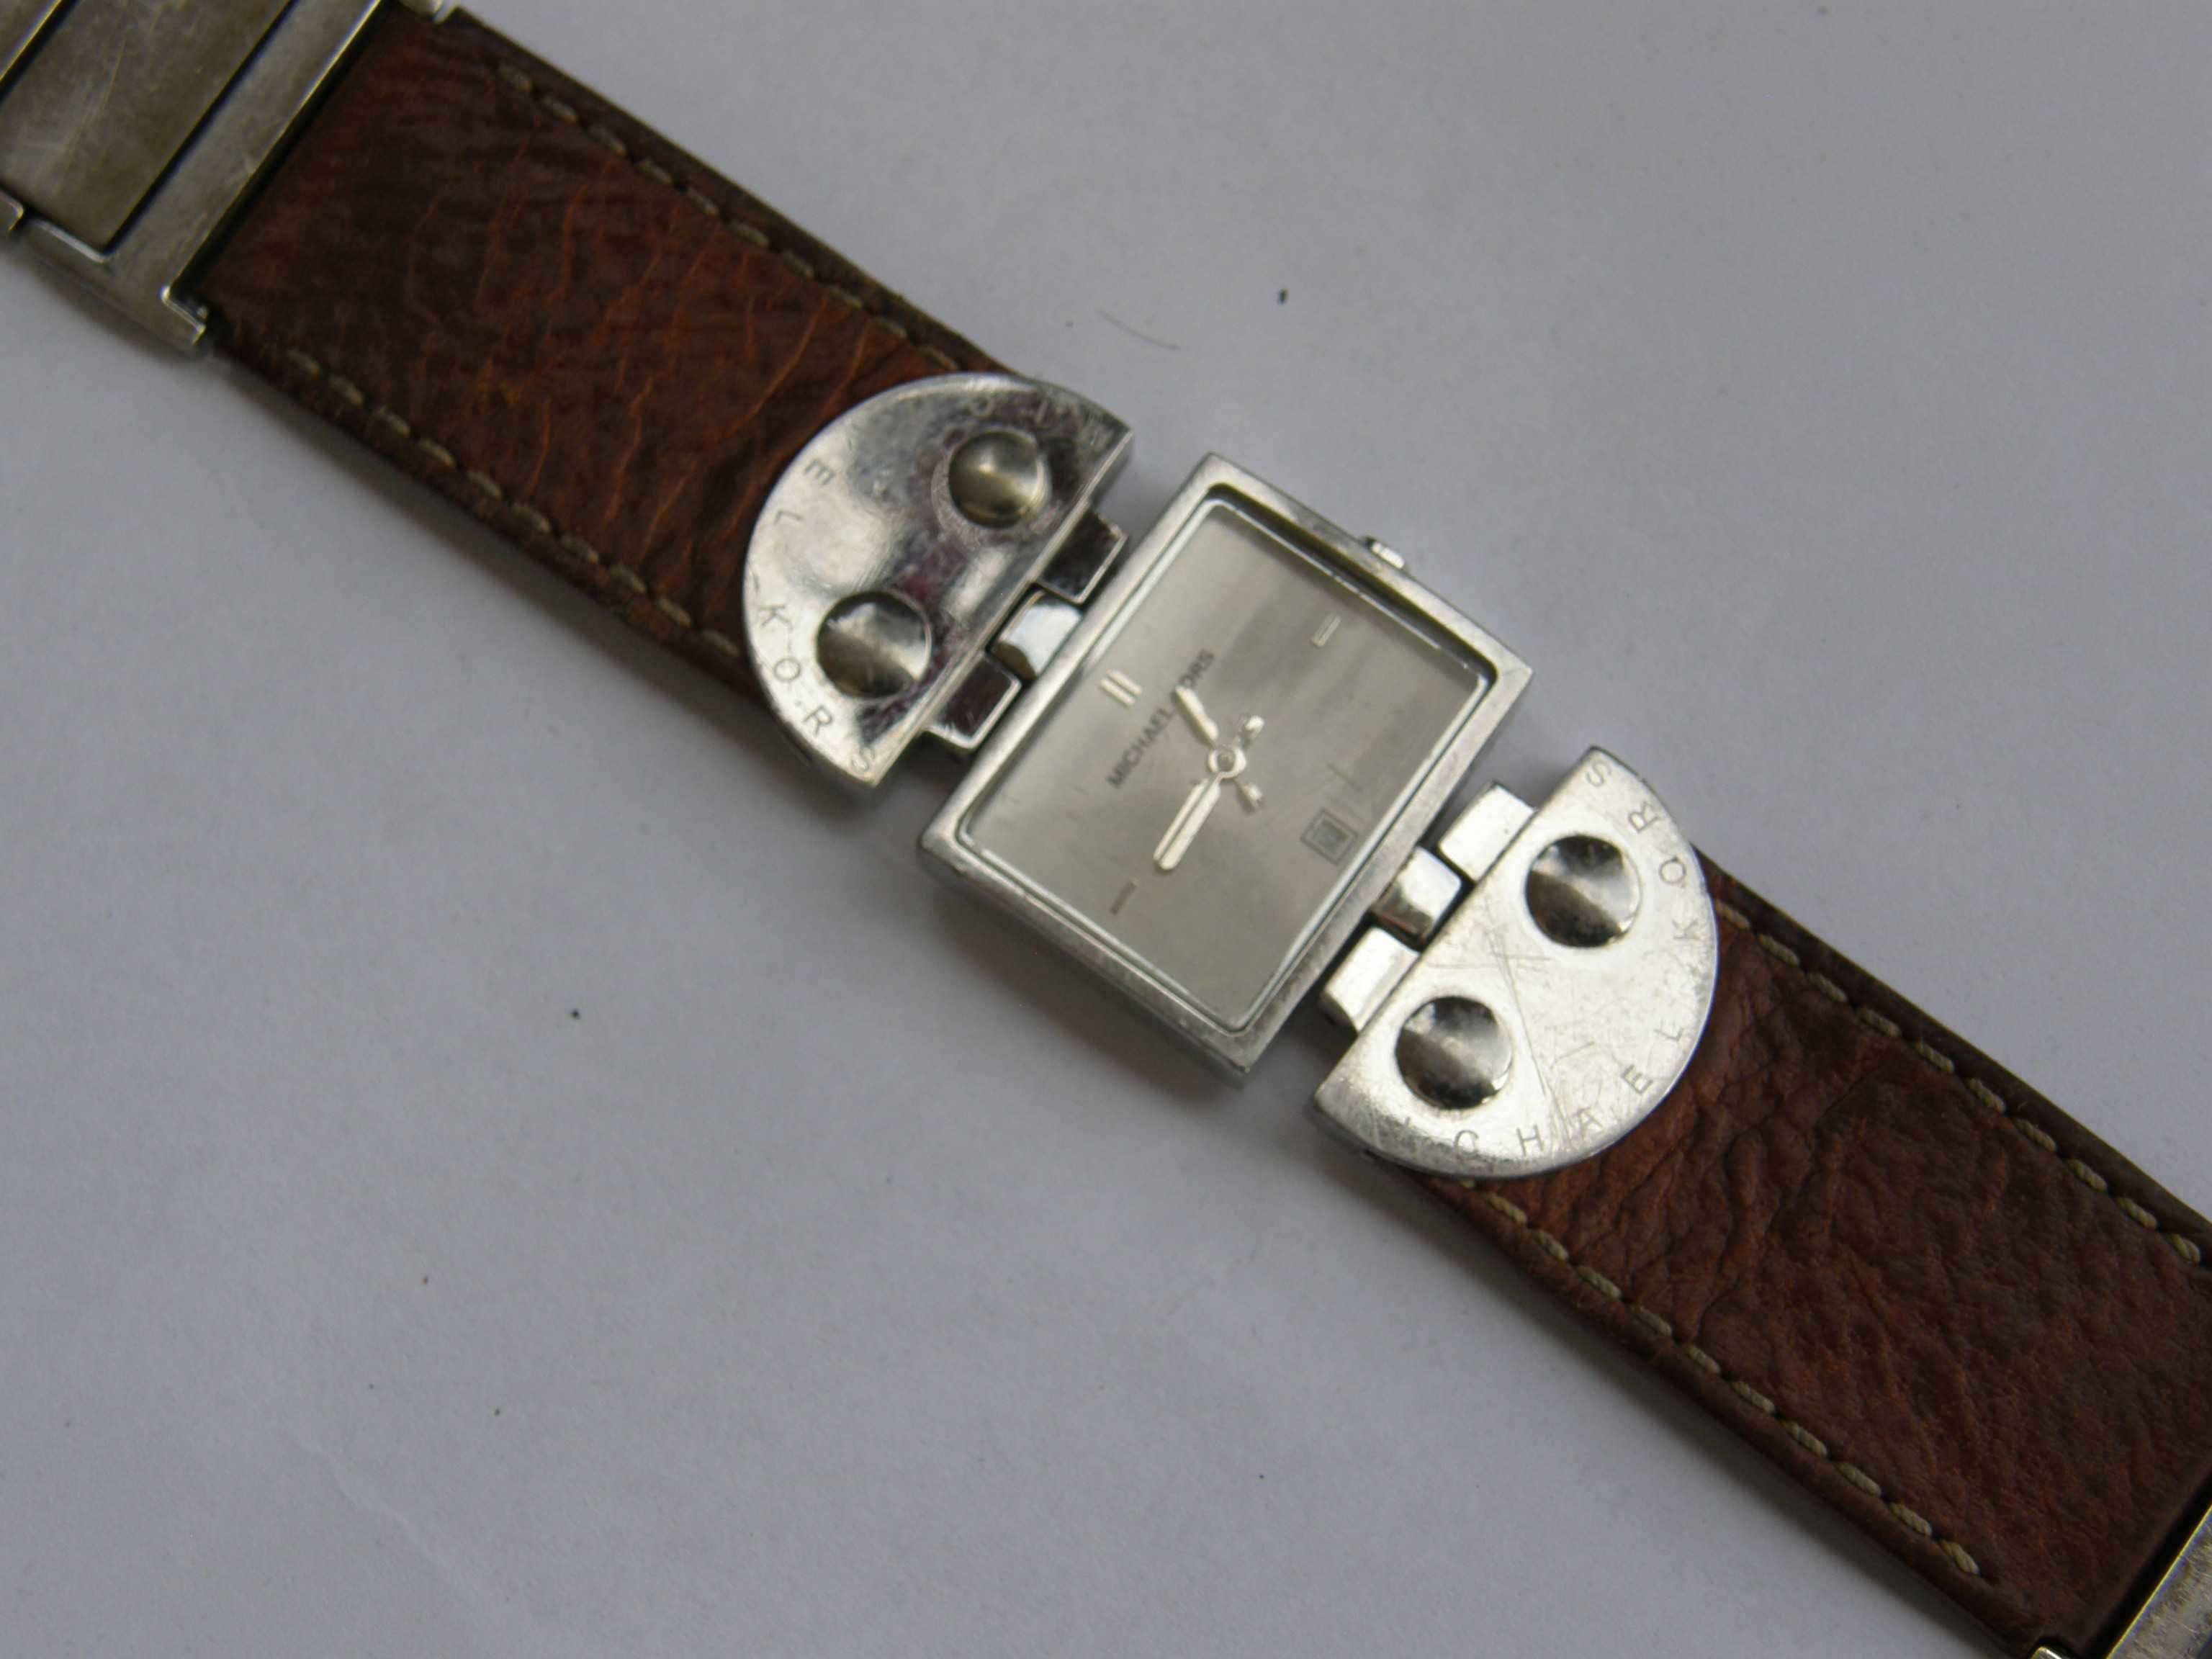 Michael Kors MK 4056 oryginalny zegarek damski